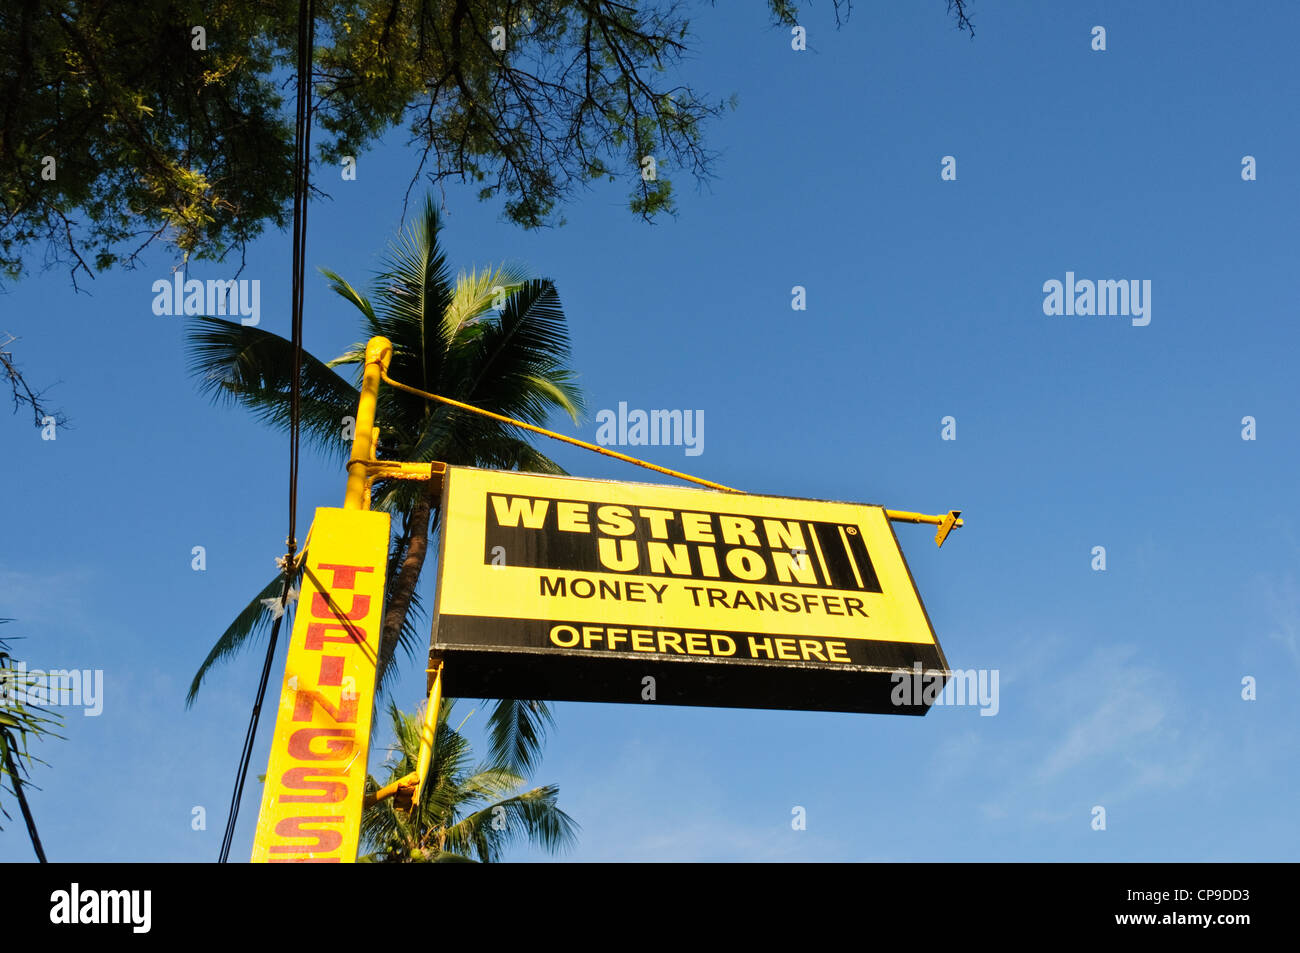 Zeichen post Western Union Money Transfer angeboten hier, blauen Himmel,  Kokos-Palmen - Sabang Puerto Galera Philippinen Südost-Asien  Stockfotografie - Alamy